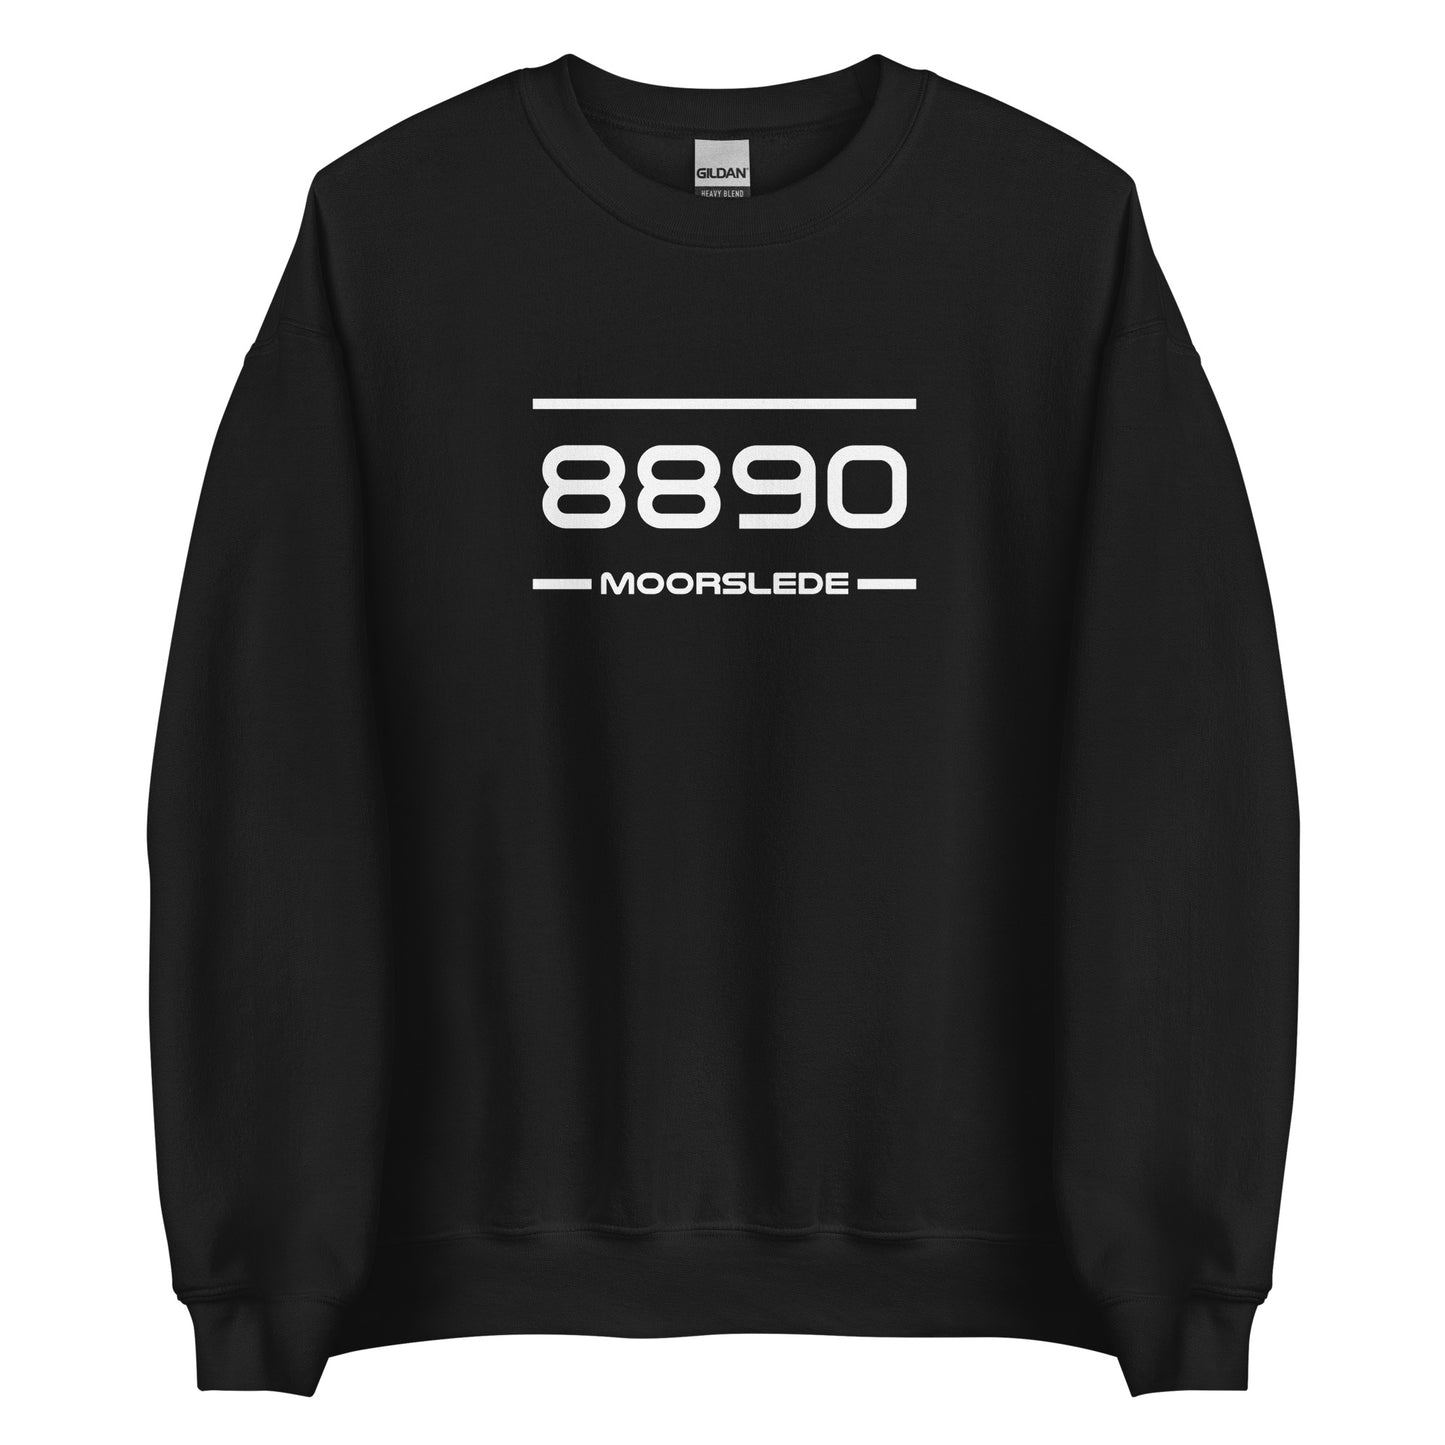 Sweater - 8890 - Moorslede (M/V)